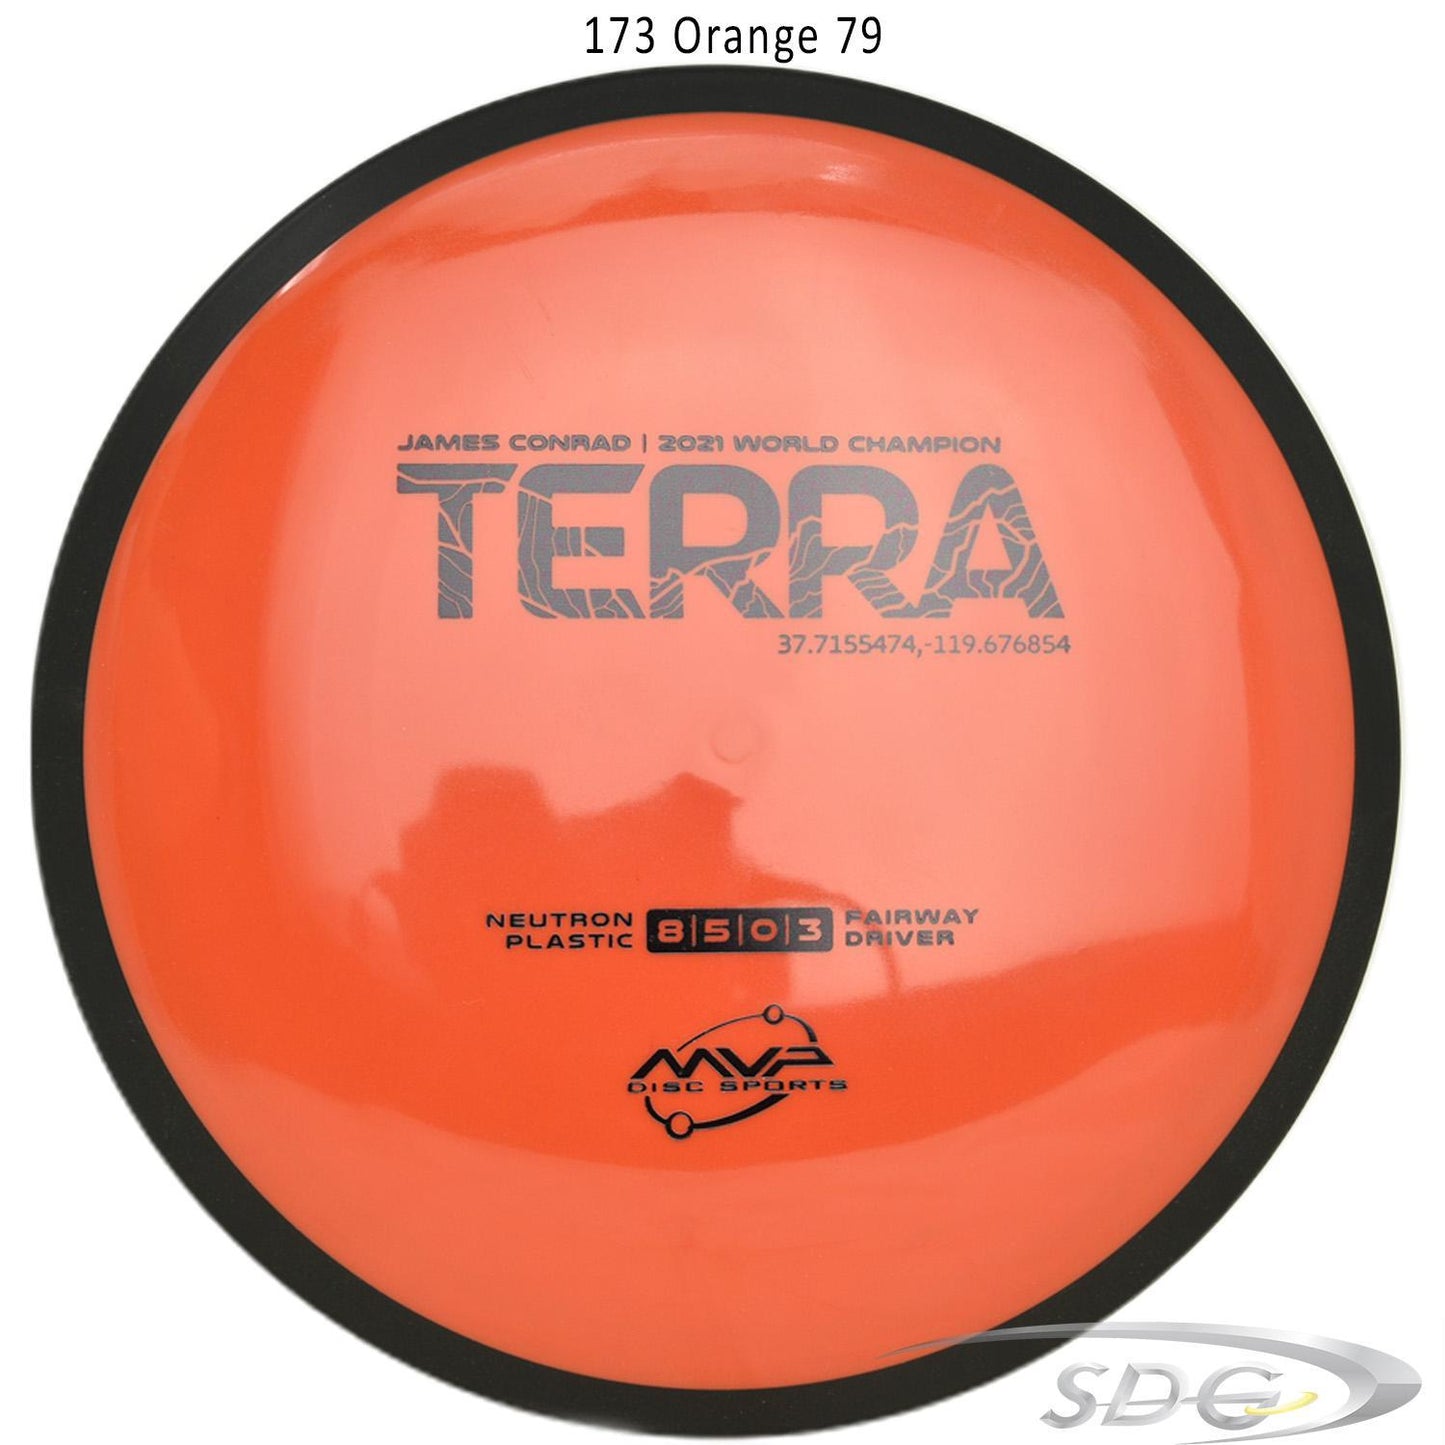 mvp-neutron-terra-2022-james-conrad-disc-golf-fairway-driver 173 Orange 79 